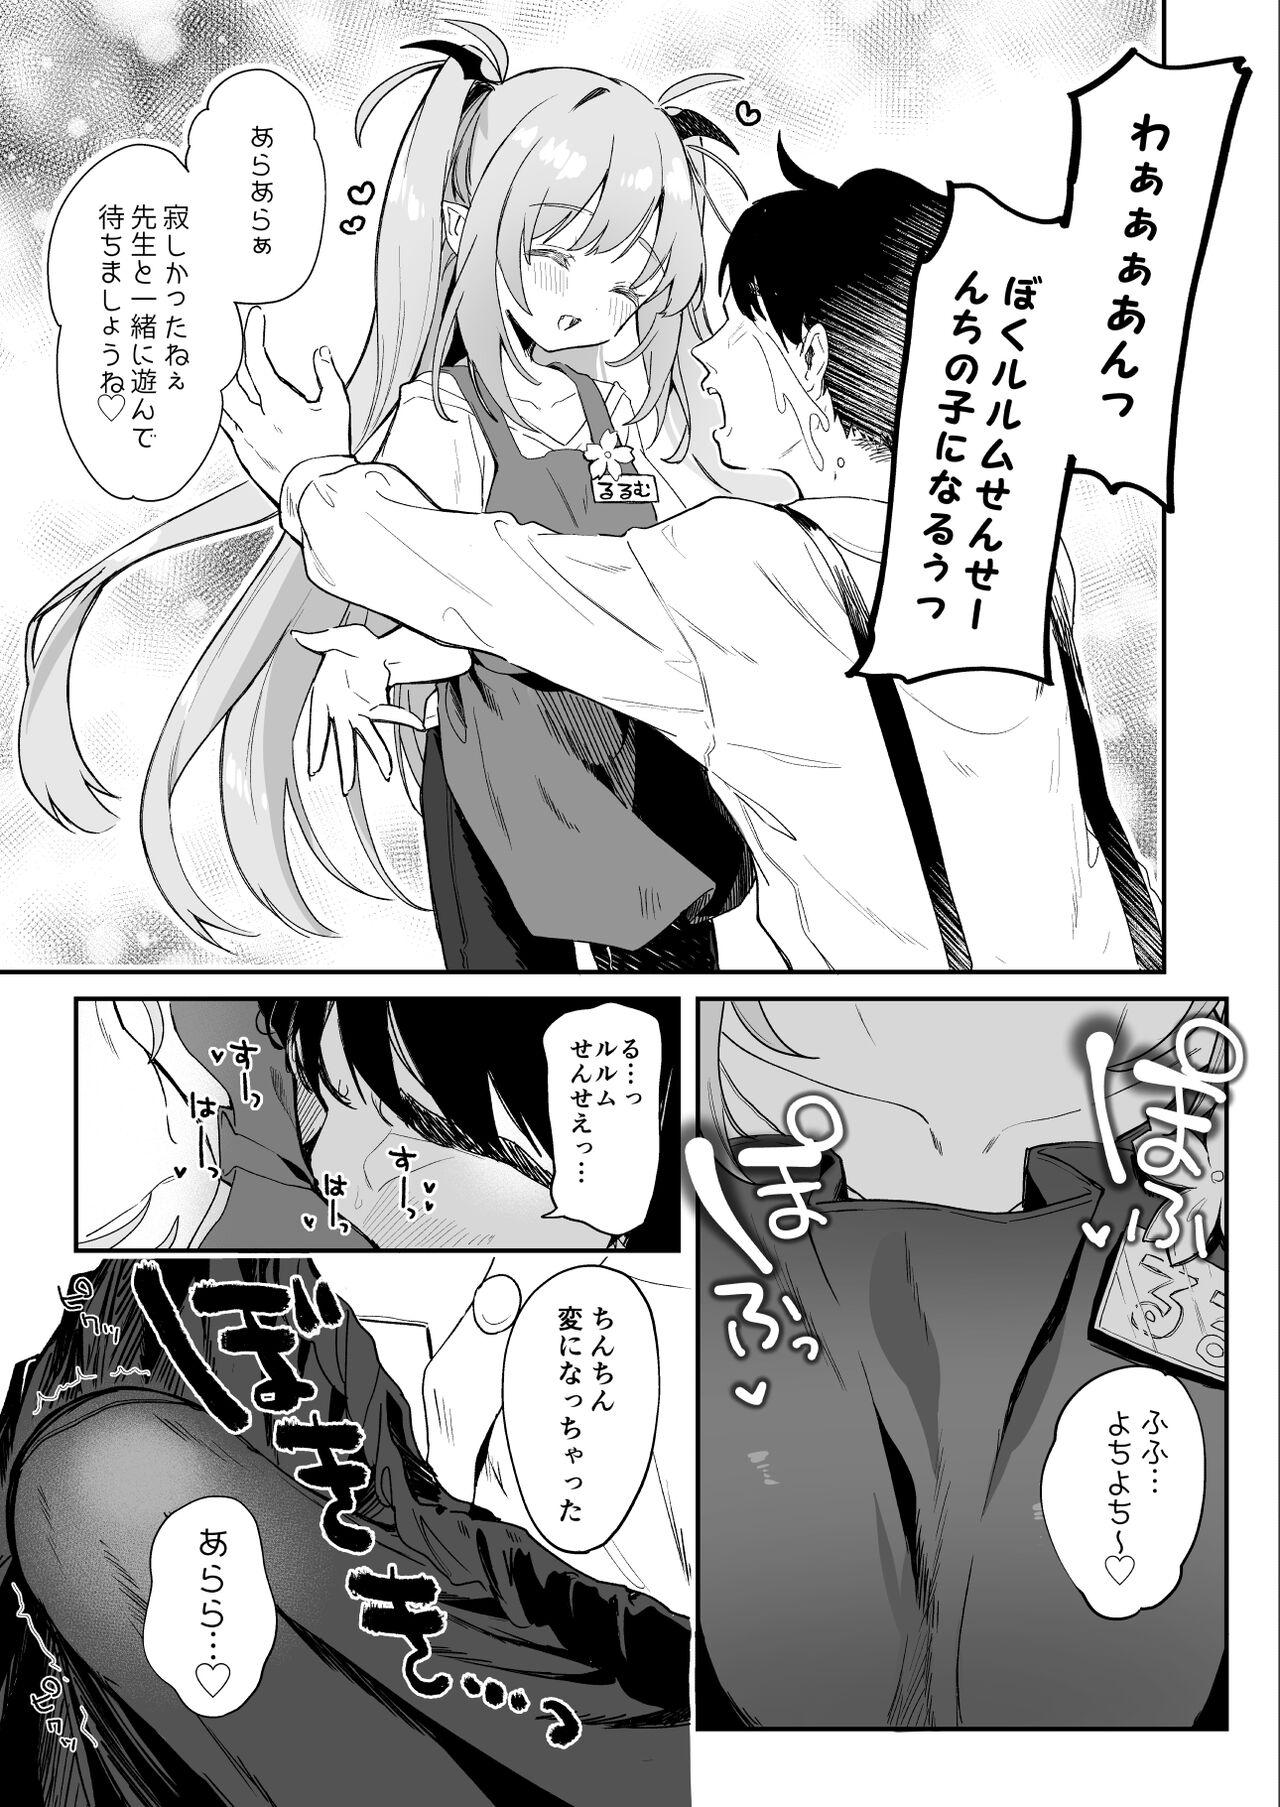 Flashing [Tamano Kedama] Kodomo no Hi (Imishin) ni Mukete Manga o Kaku - Original Transex - Page 5